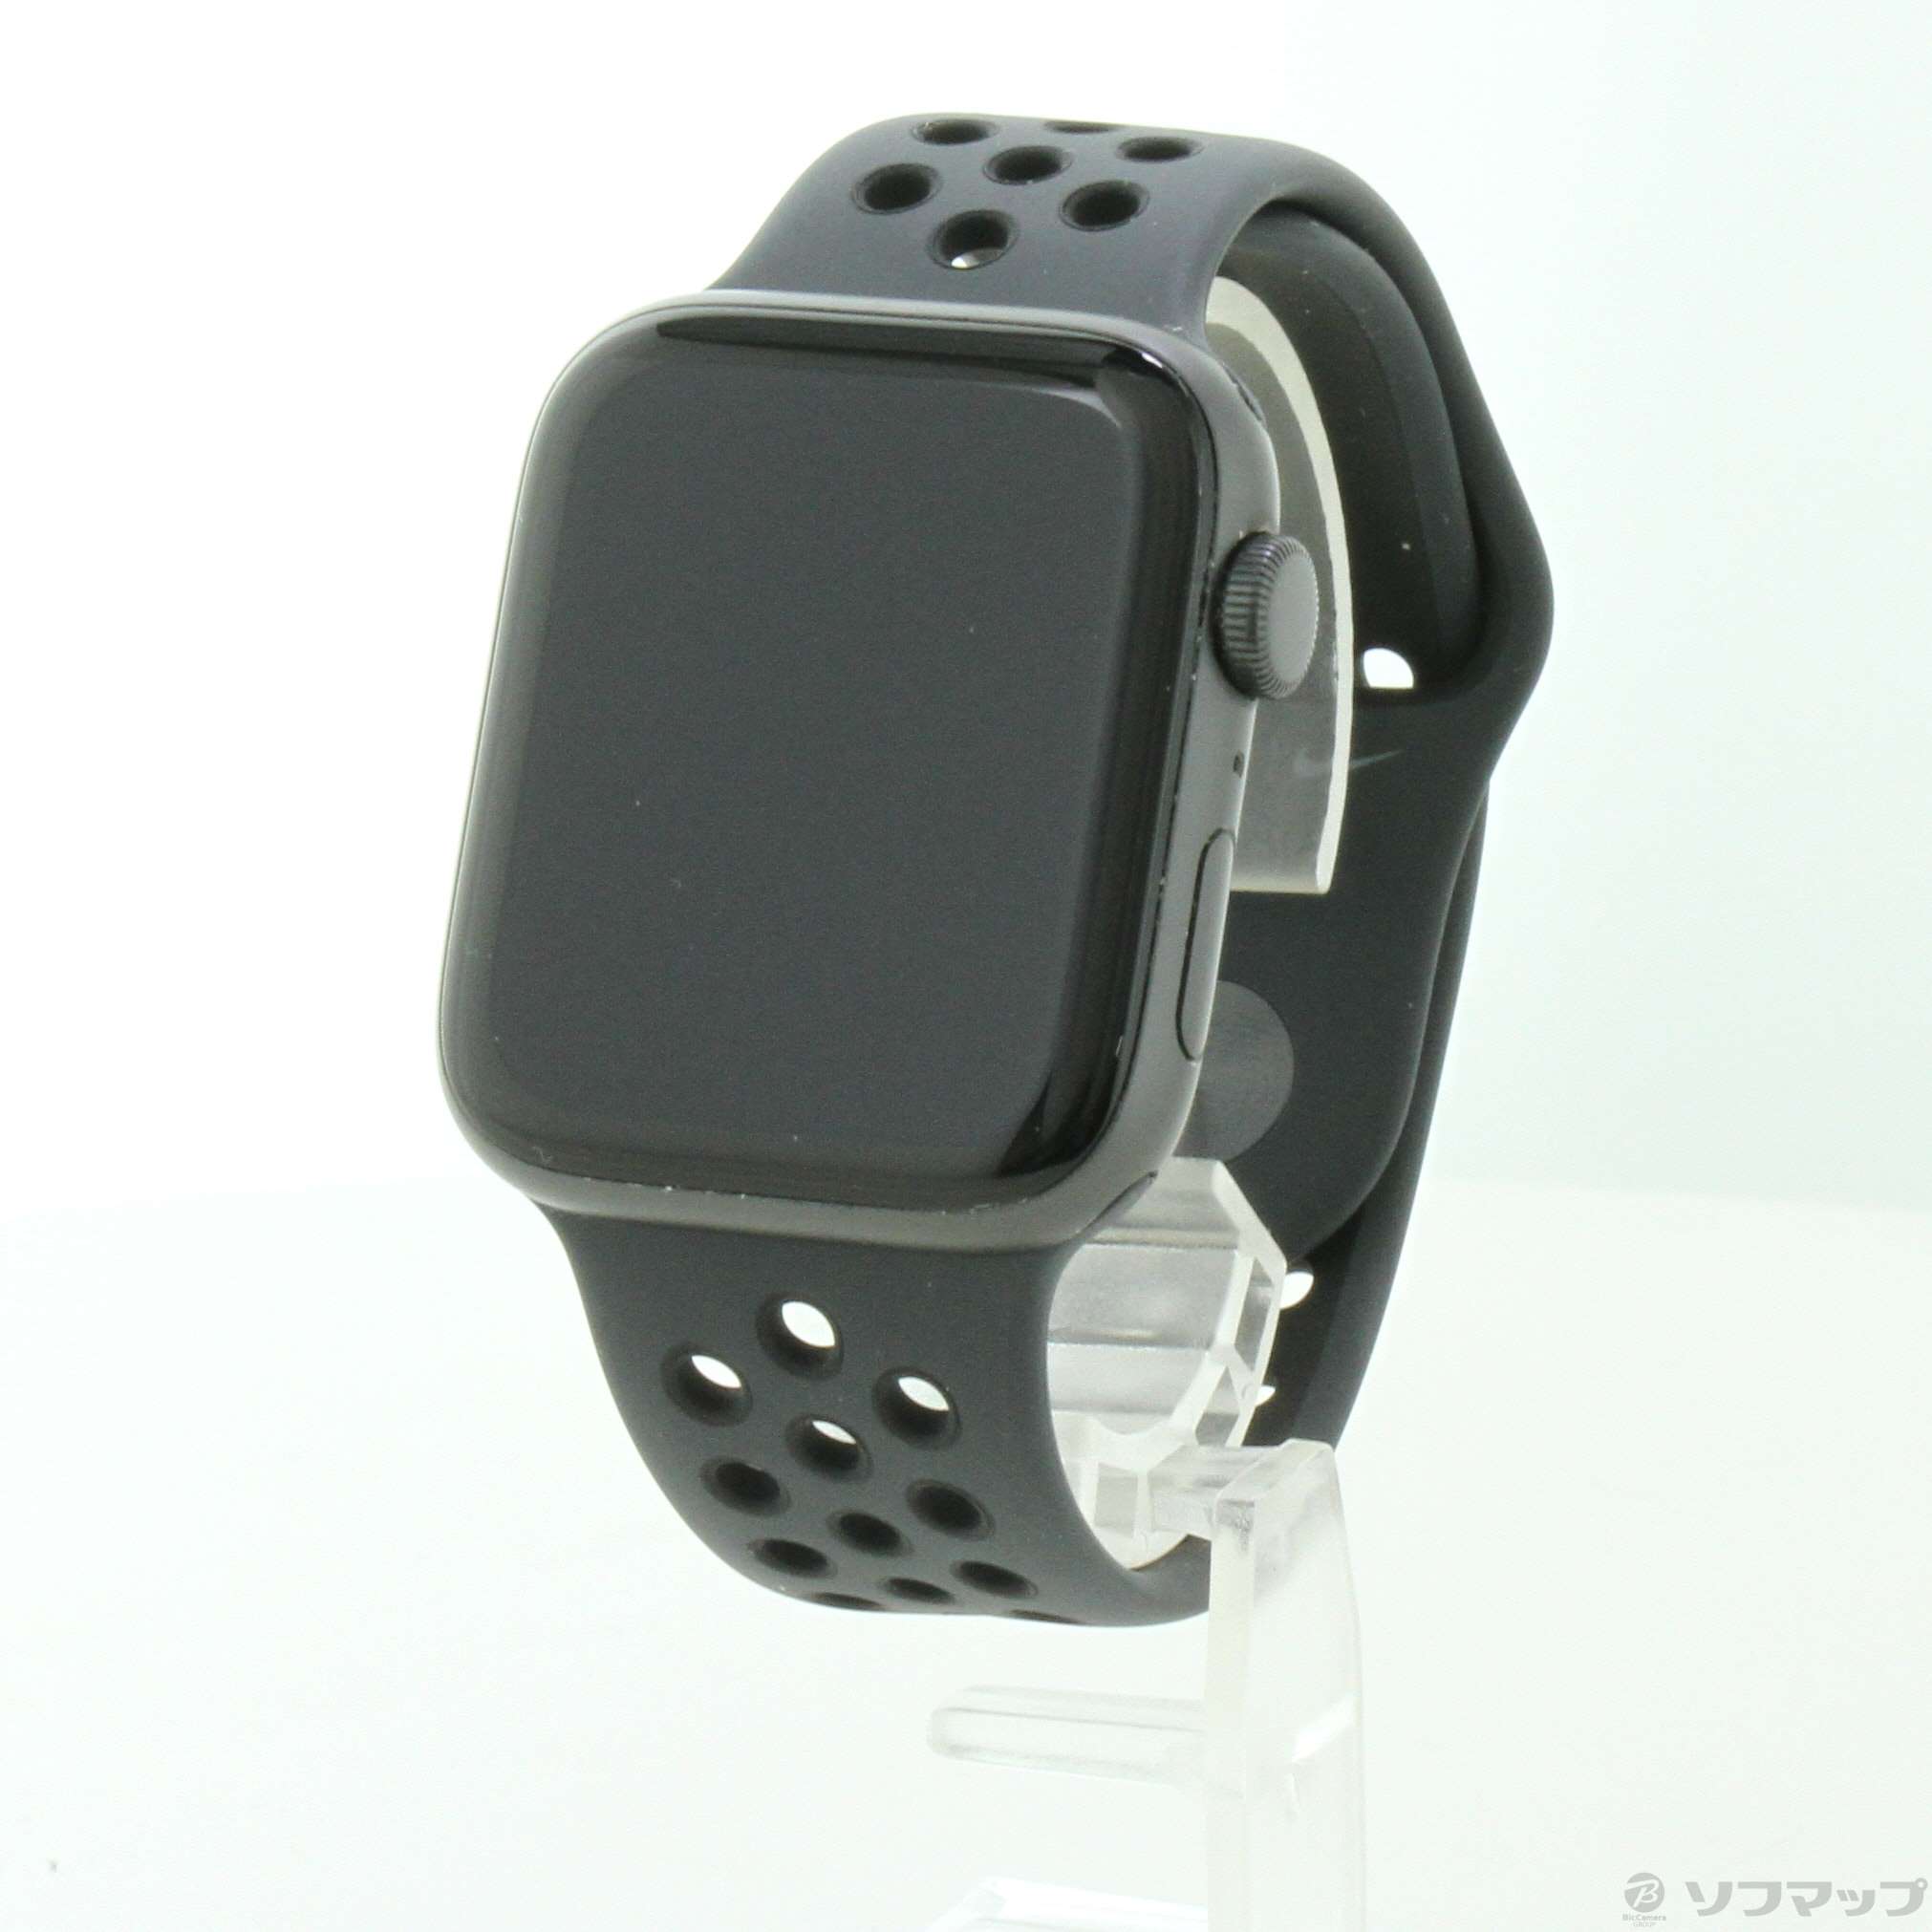 値下げ可能 アップルウォッチse 44mm スペースグレー Applewatch